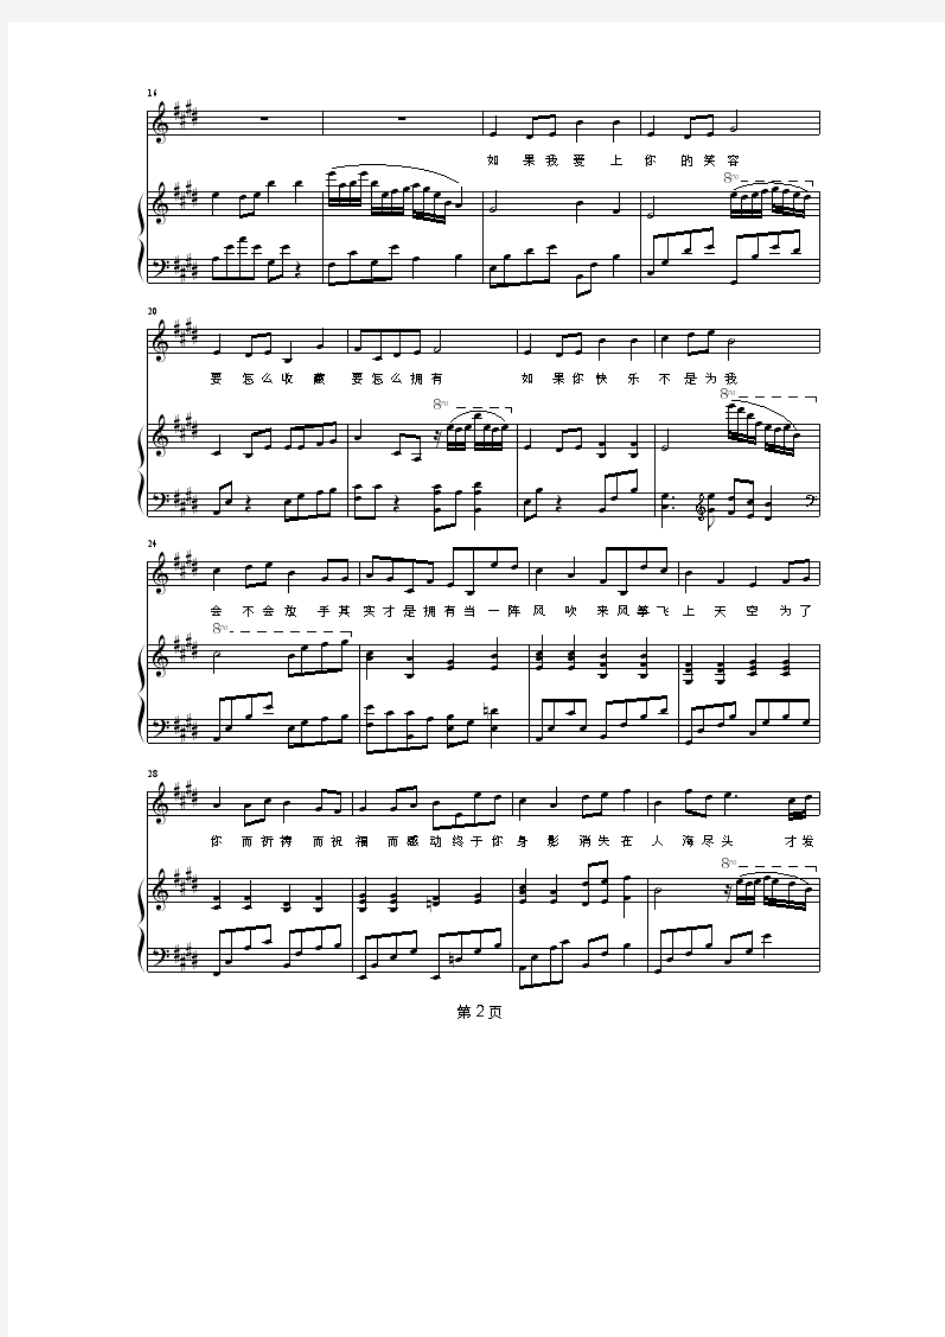 知足-弹唱版 正谱 钢琴谱 五线谱 乐谱.pdf